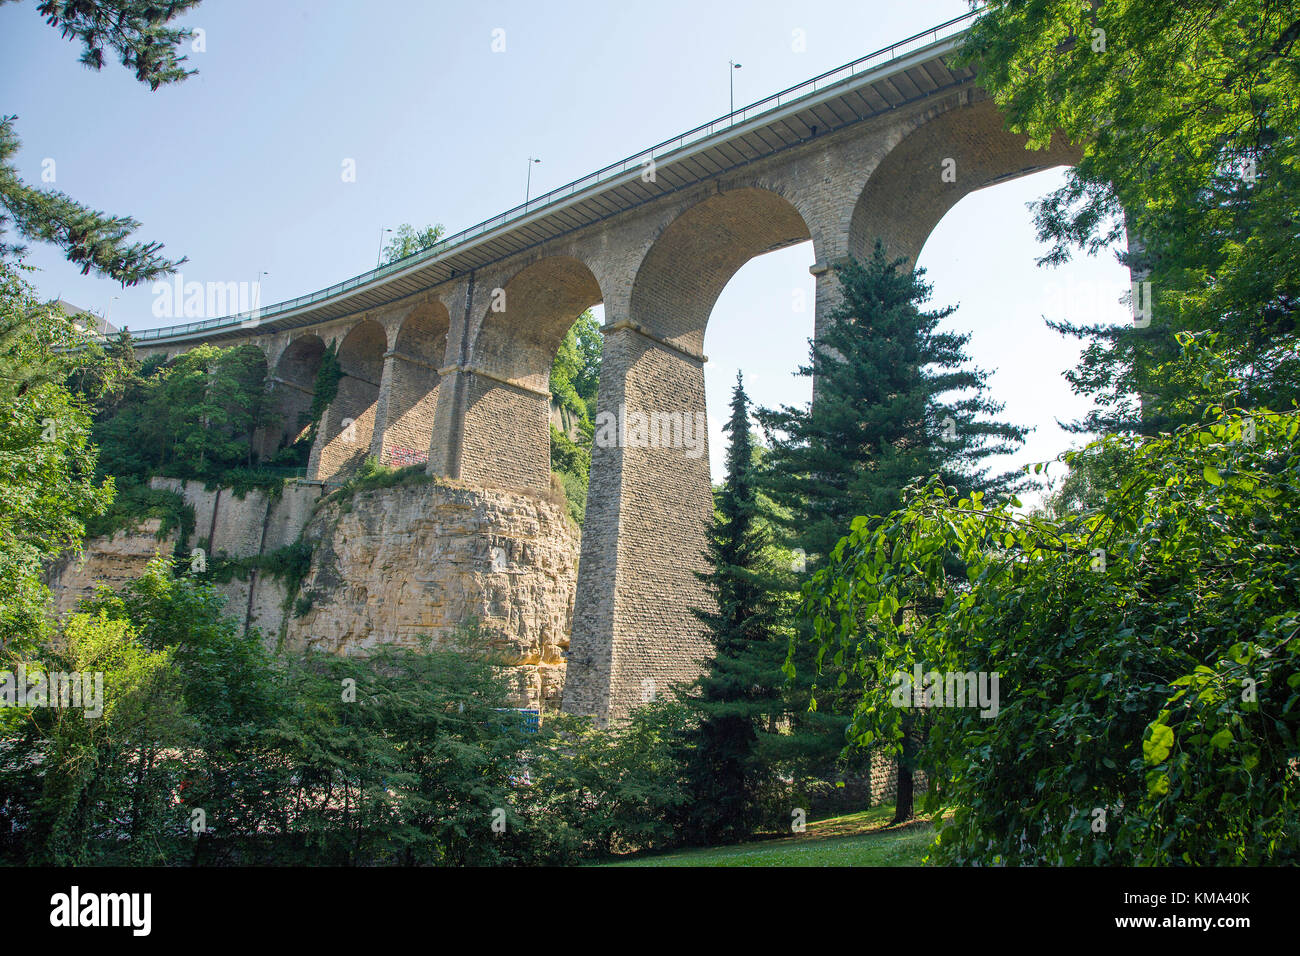 Viaducto, también conocido como pasarela o puente viejo, de la ciudad de Luxemburgo, Luxemburgo, Europa Foto de stock